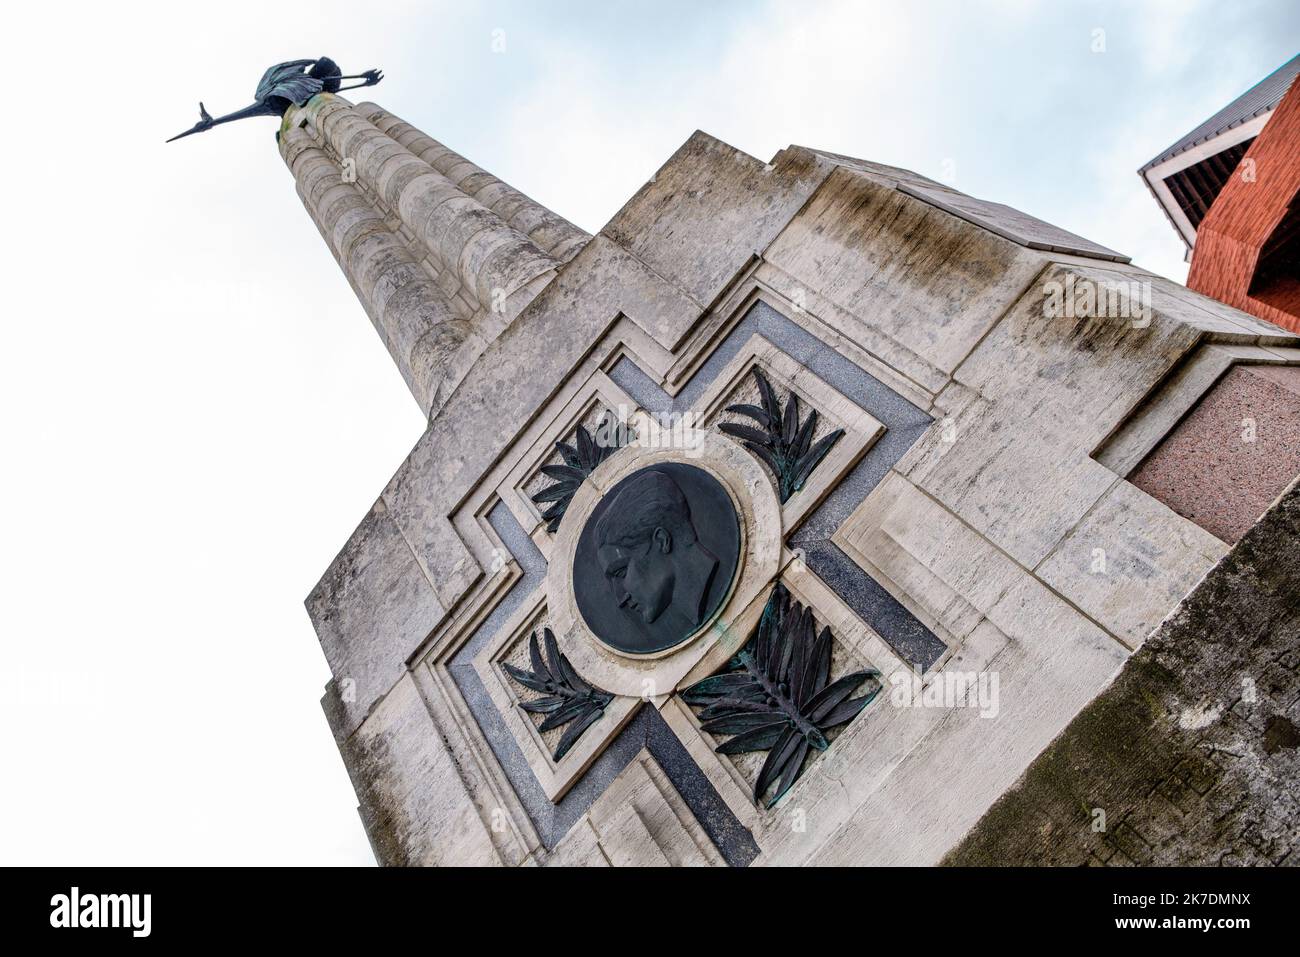 ©Arnaud BEINAT/Maxppp. 2021/05/24, Poelkapelle, Belgien. Monument dédié à la mémoire de l'as français de la Grande guerre Georges Guynemer, Figure emblématique de l'Aviation de Chasse de la Grande guerre, porté disparu dans ce secteur le 11 septembre 1917. Stockfoto